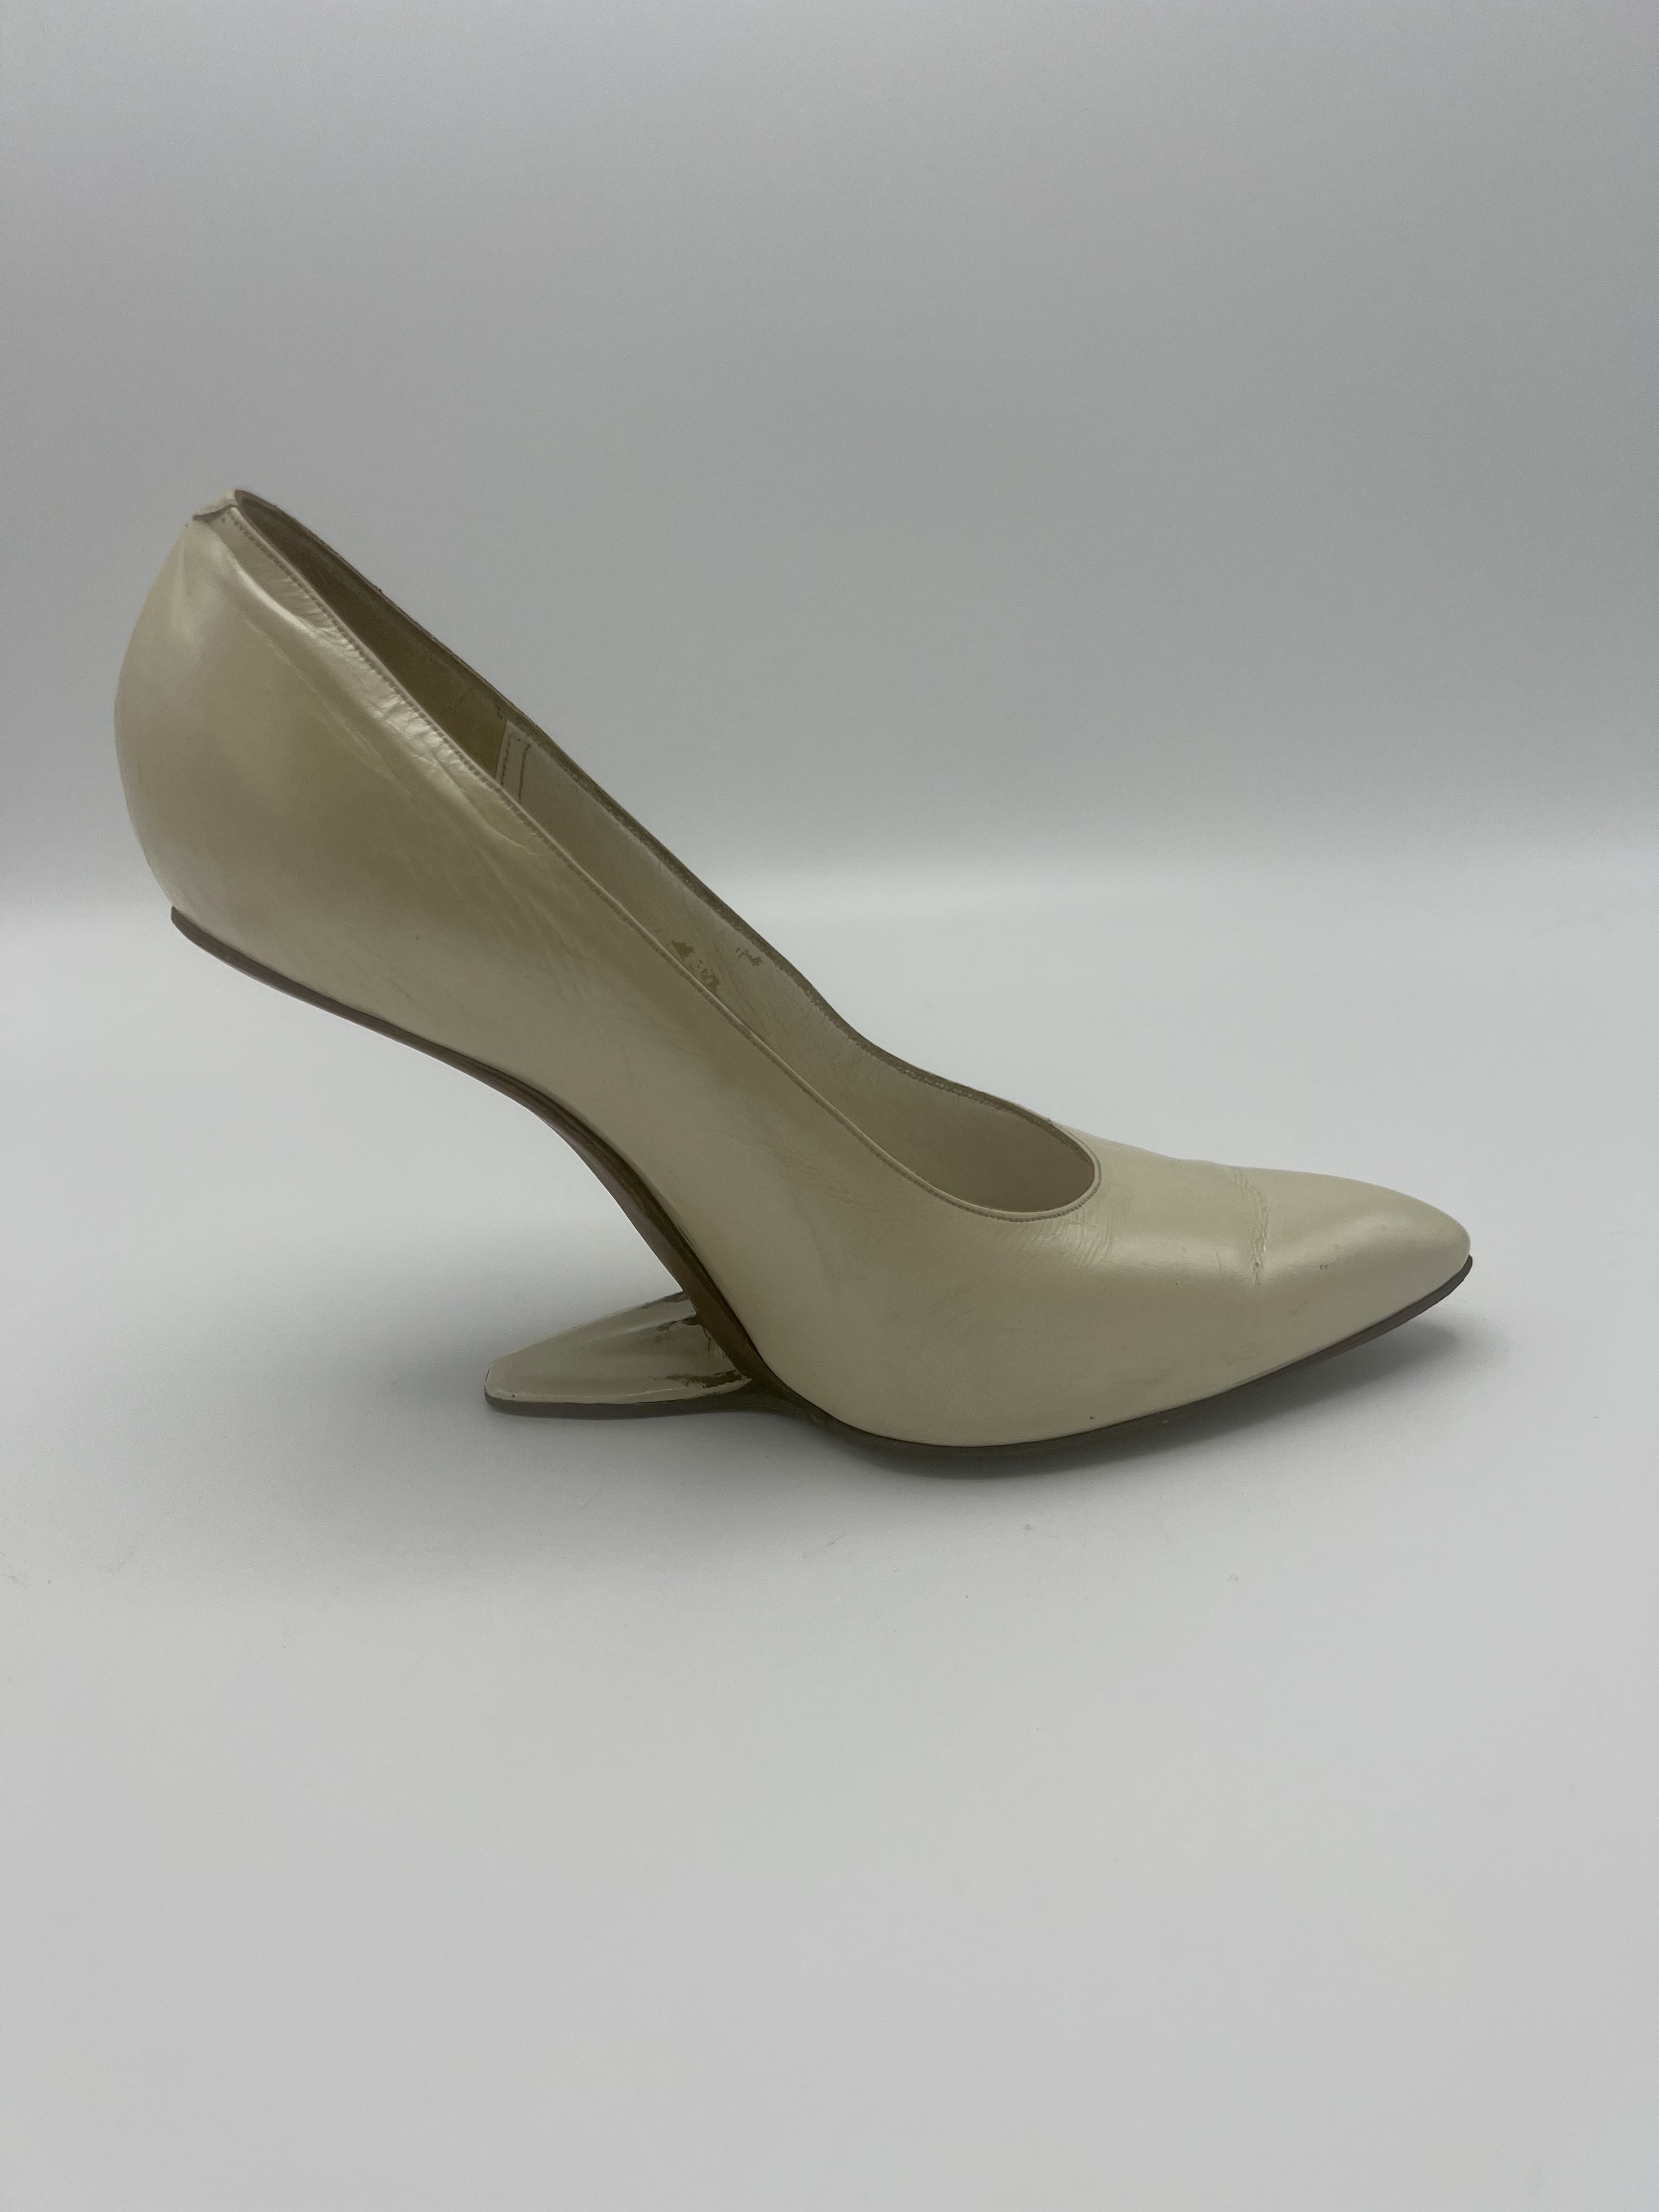 Weird heel less shoes | Heels, Shoes, High heels